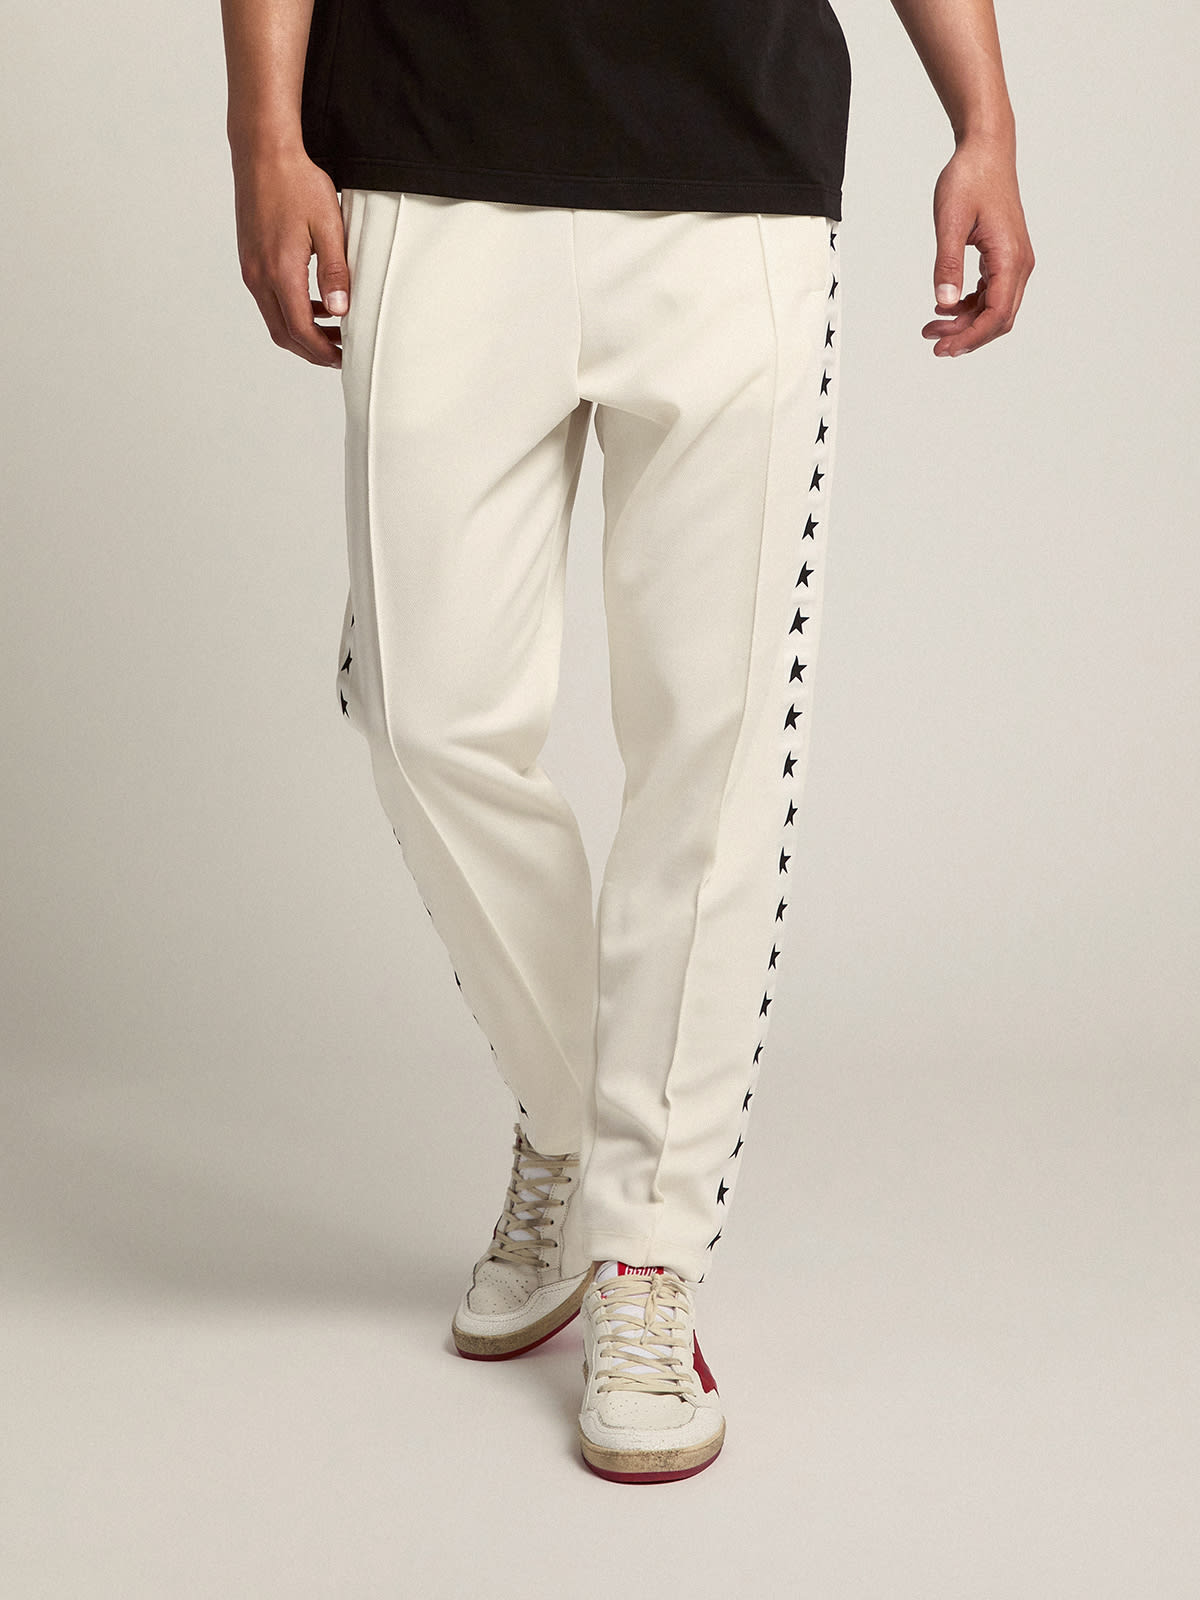 Golden Goose - Pantalon de jogging homme blanc avec étoiles noires sur les côtés in 